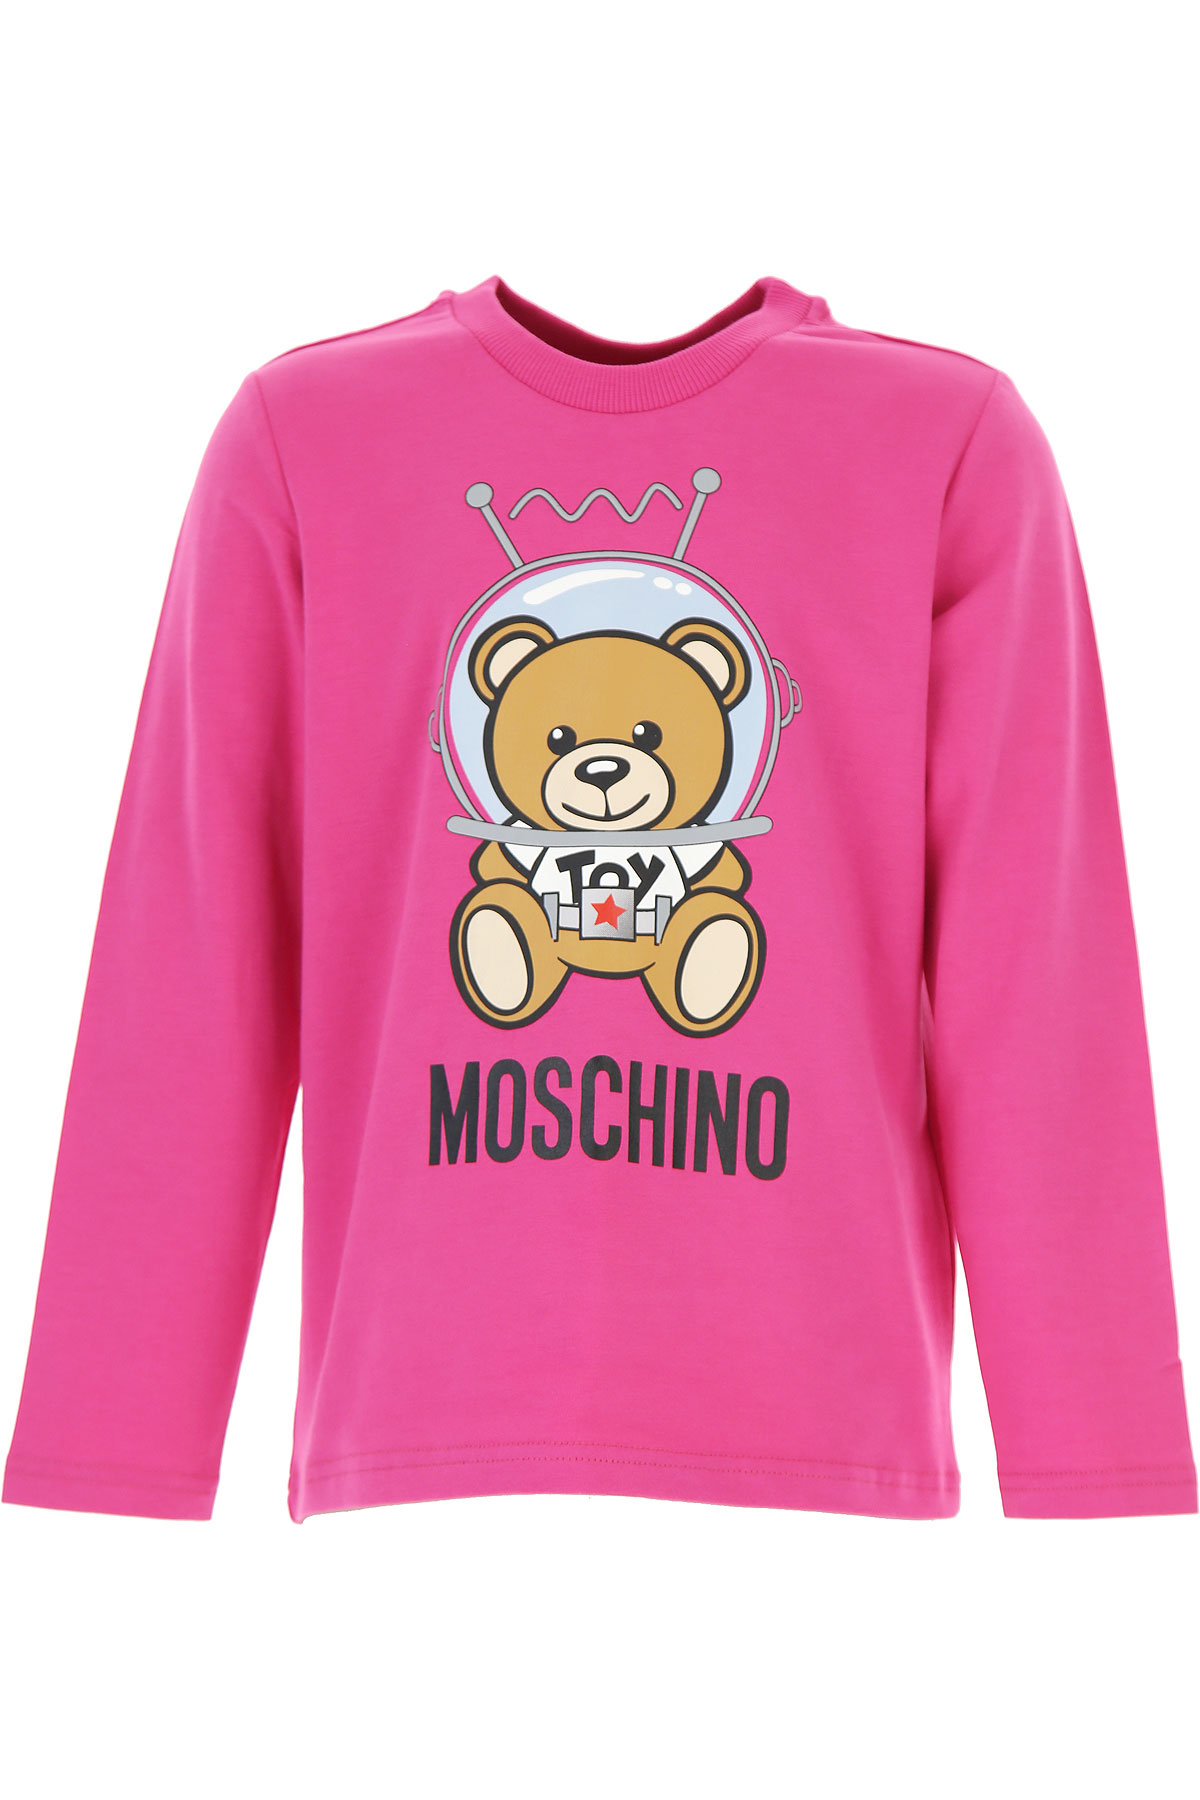 Moschino Kinder T-Shirt für Mädchen Günstig im Sale, Fuchsie, Baumwolle, 2017, 4Y 6Y 8Y